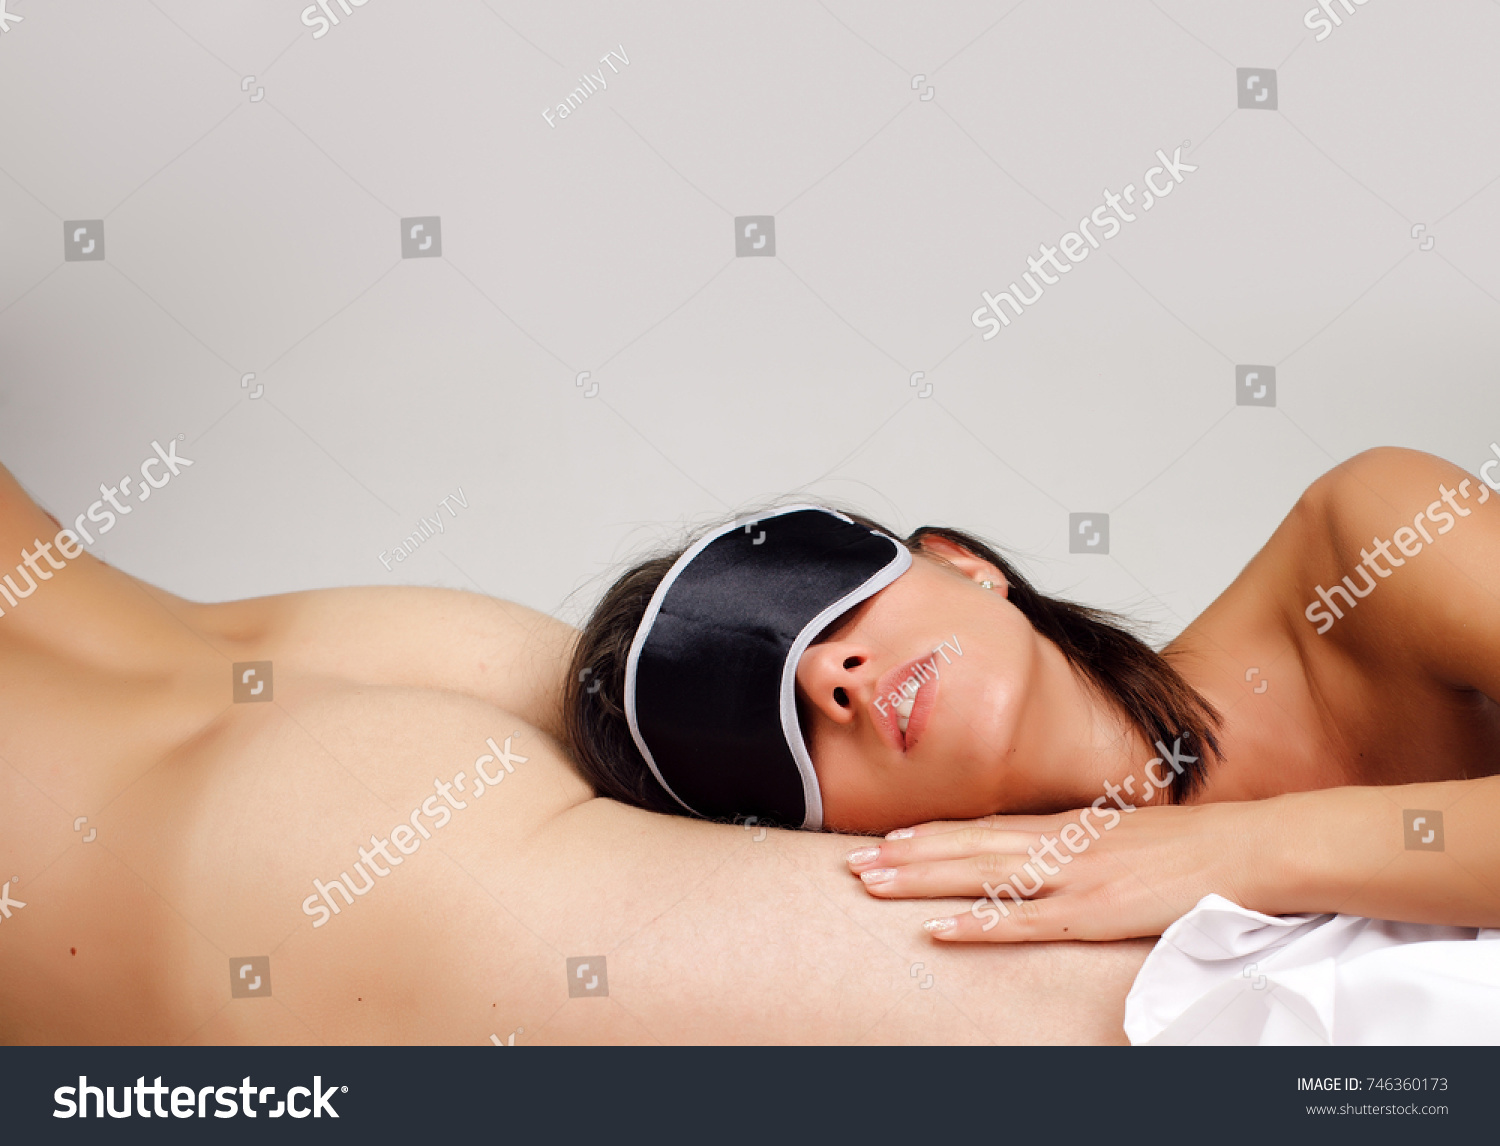 Woman naked asleep